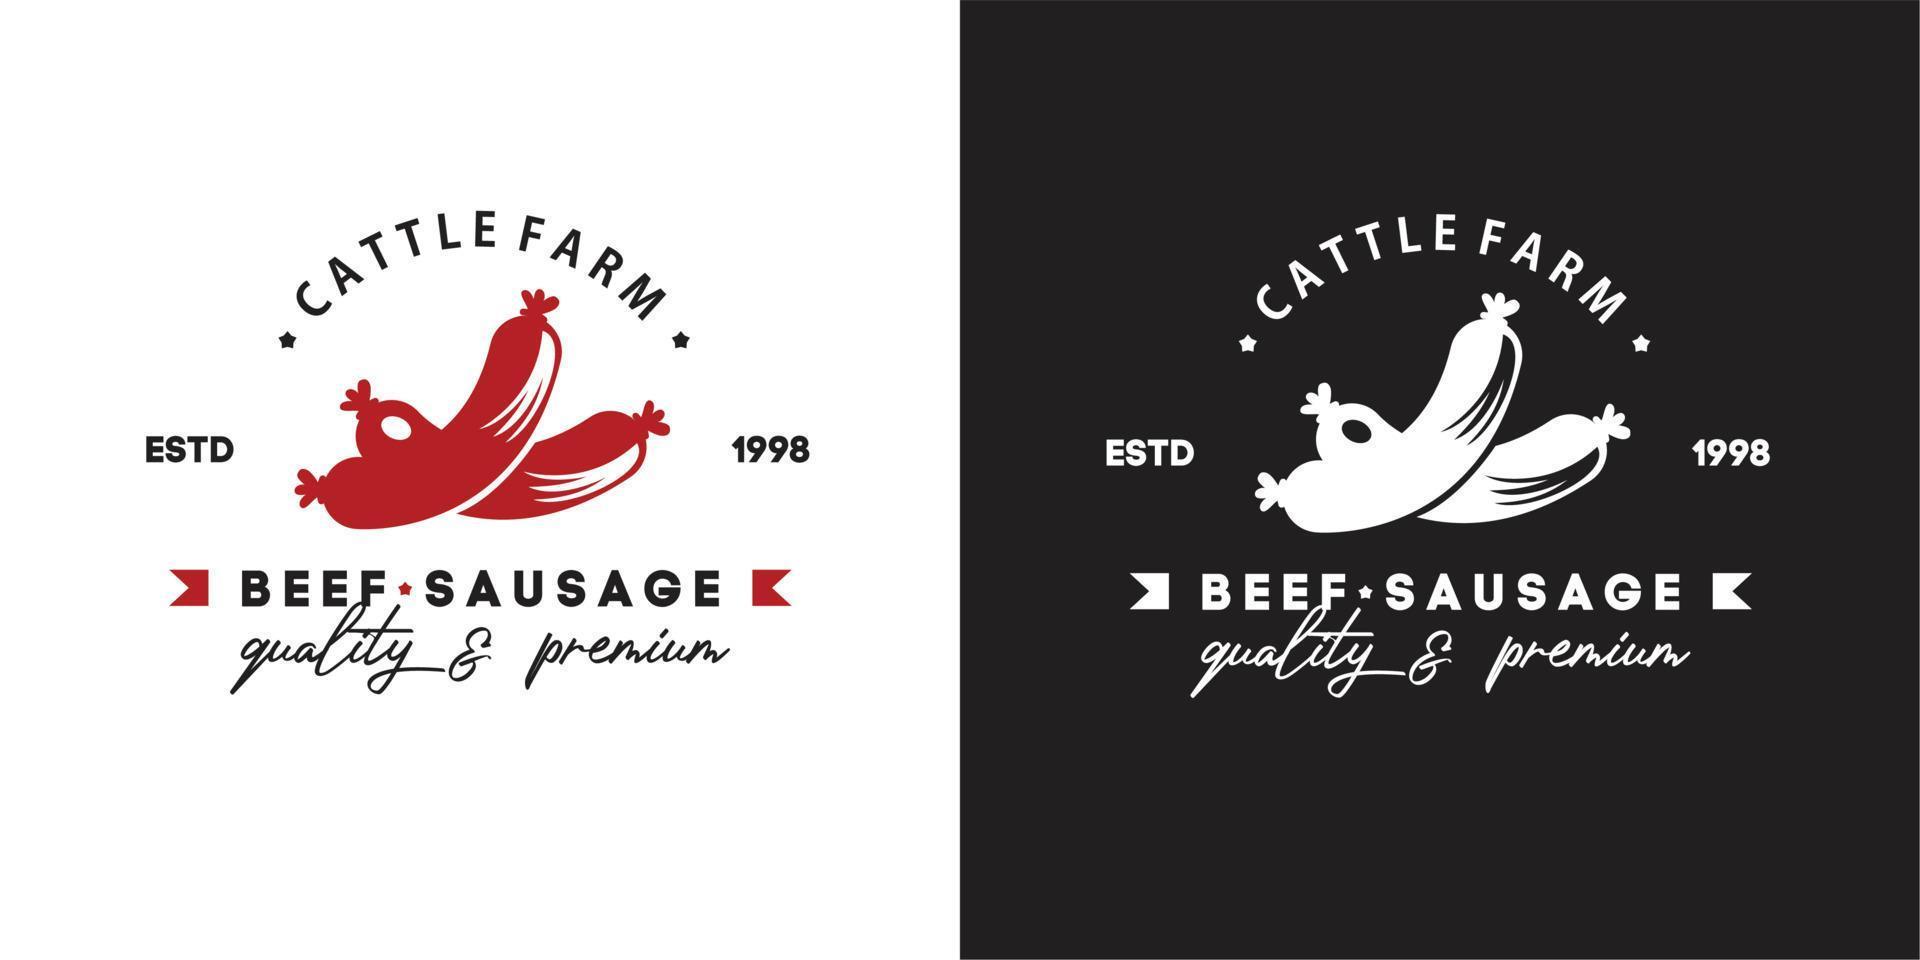 Illustration Vektorgrafik von Rindfleisch lange rote Wurst aus Rinderfarm Premium-Qualität gut für den Lebensmitteleinzelhandel Wurstgeschäft Industrie Vintage-Logo vektor